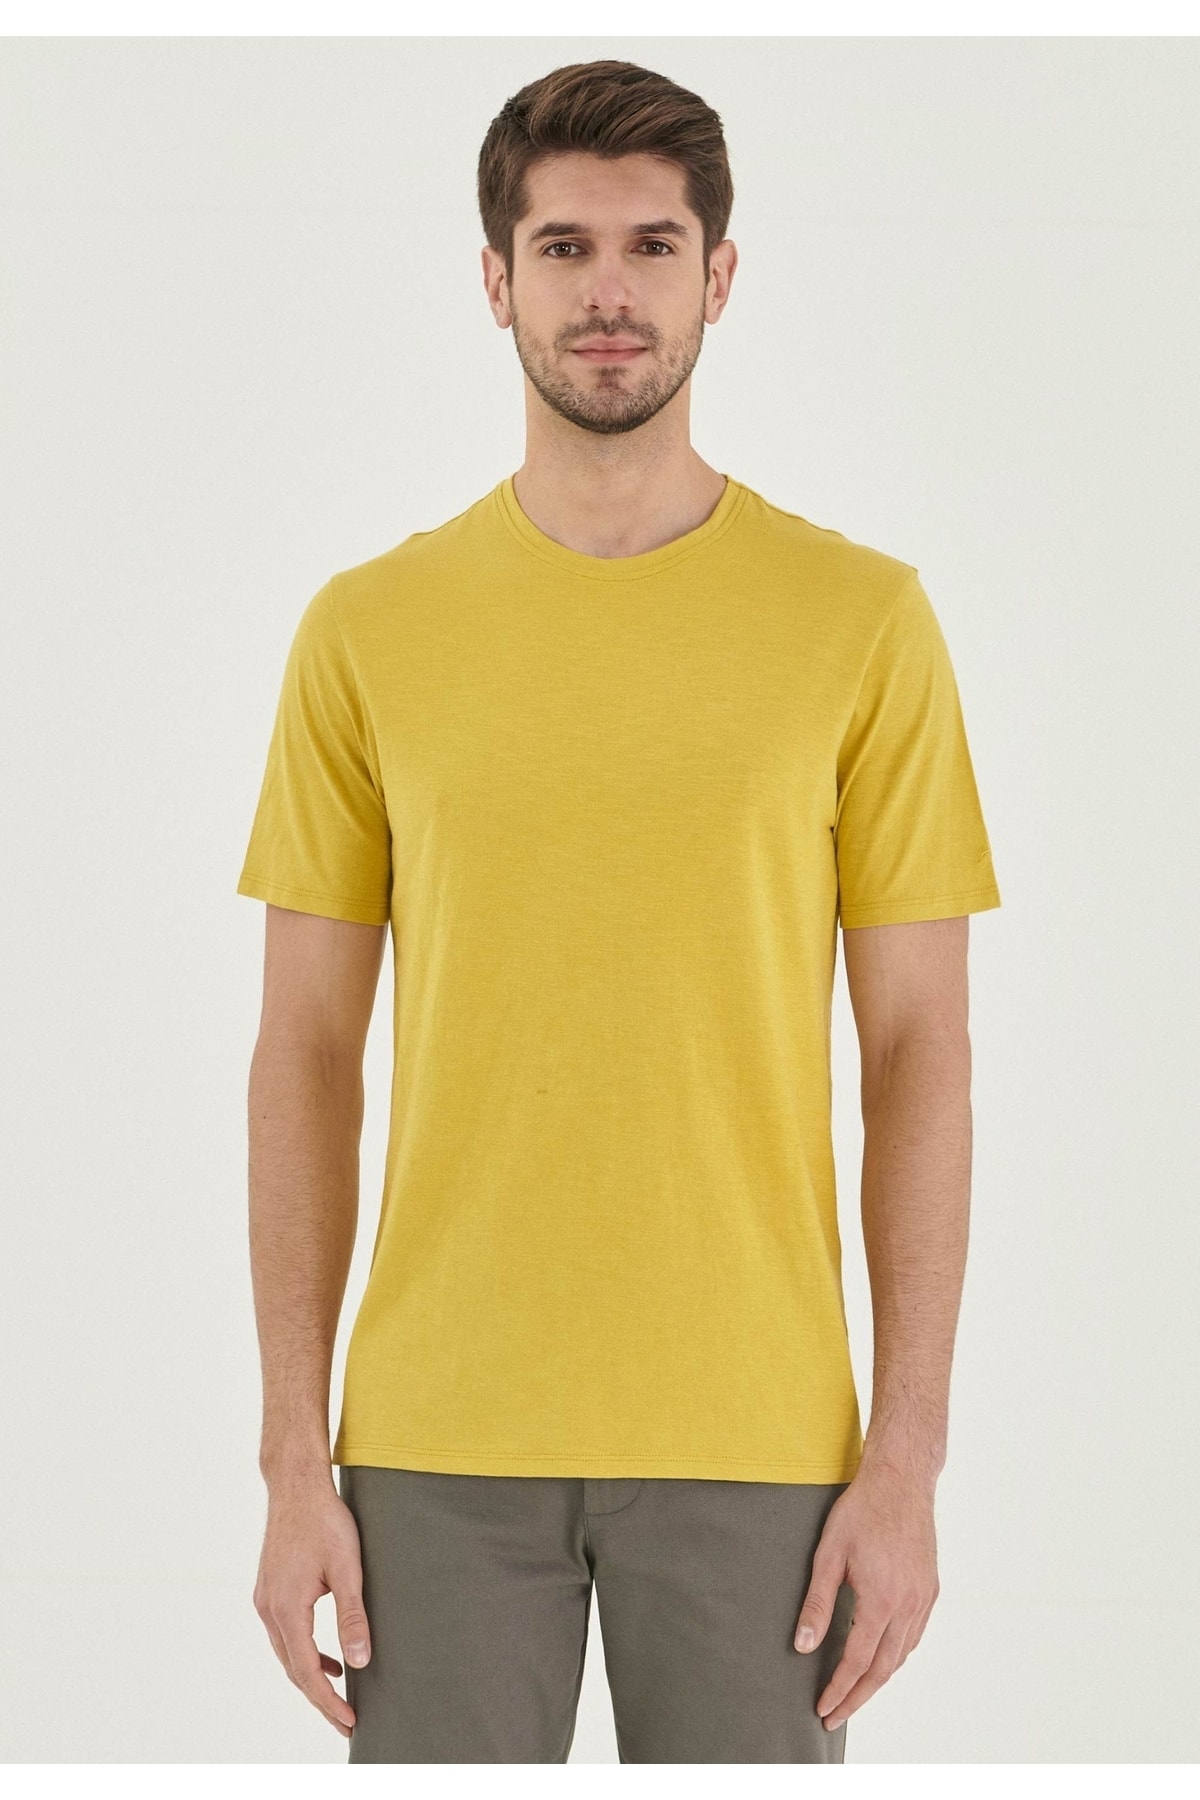 ORGANICATION T-Shirt Gelb Figurbetont Fast ausverkauft